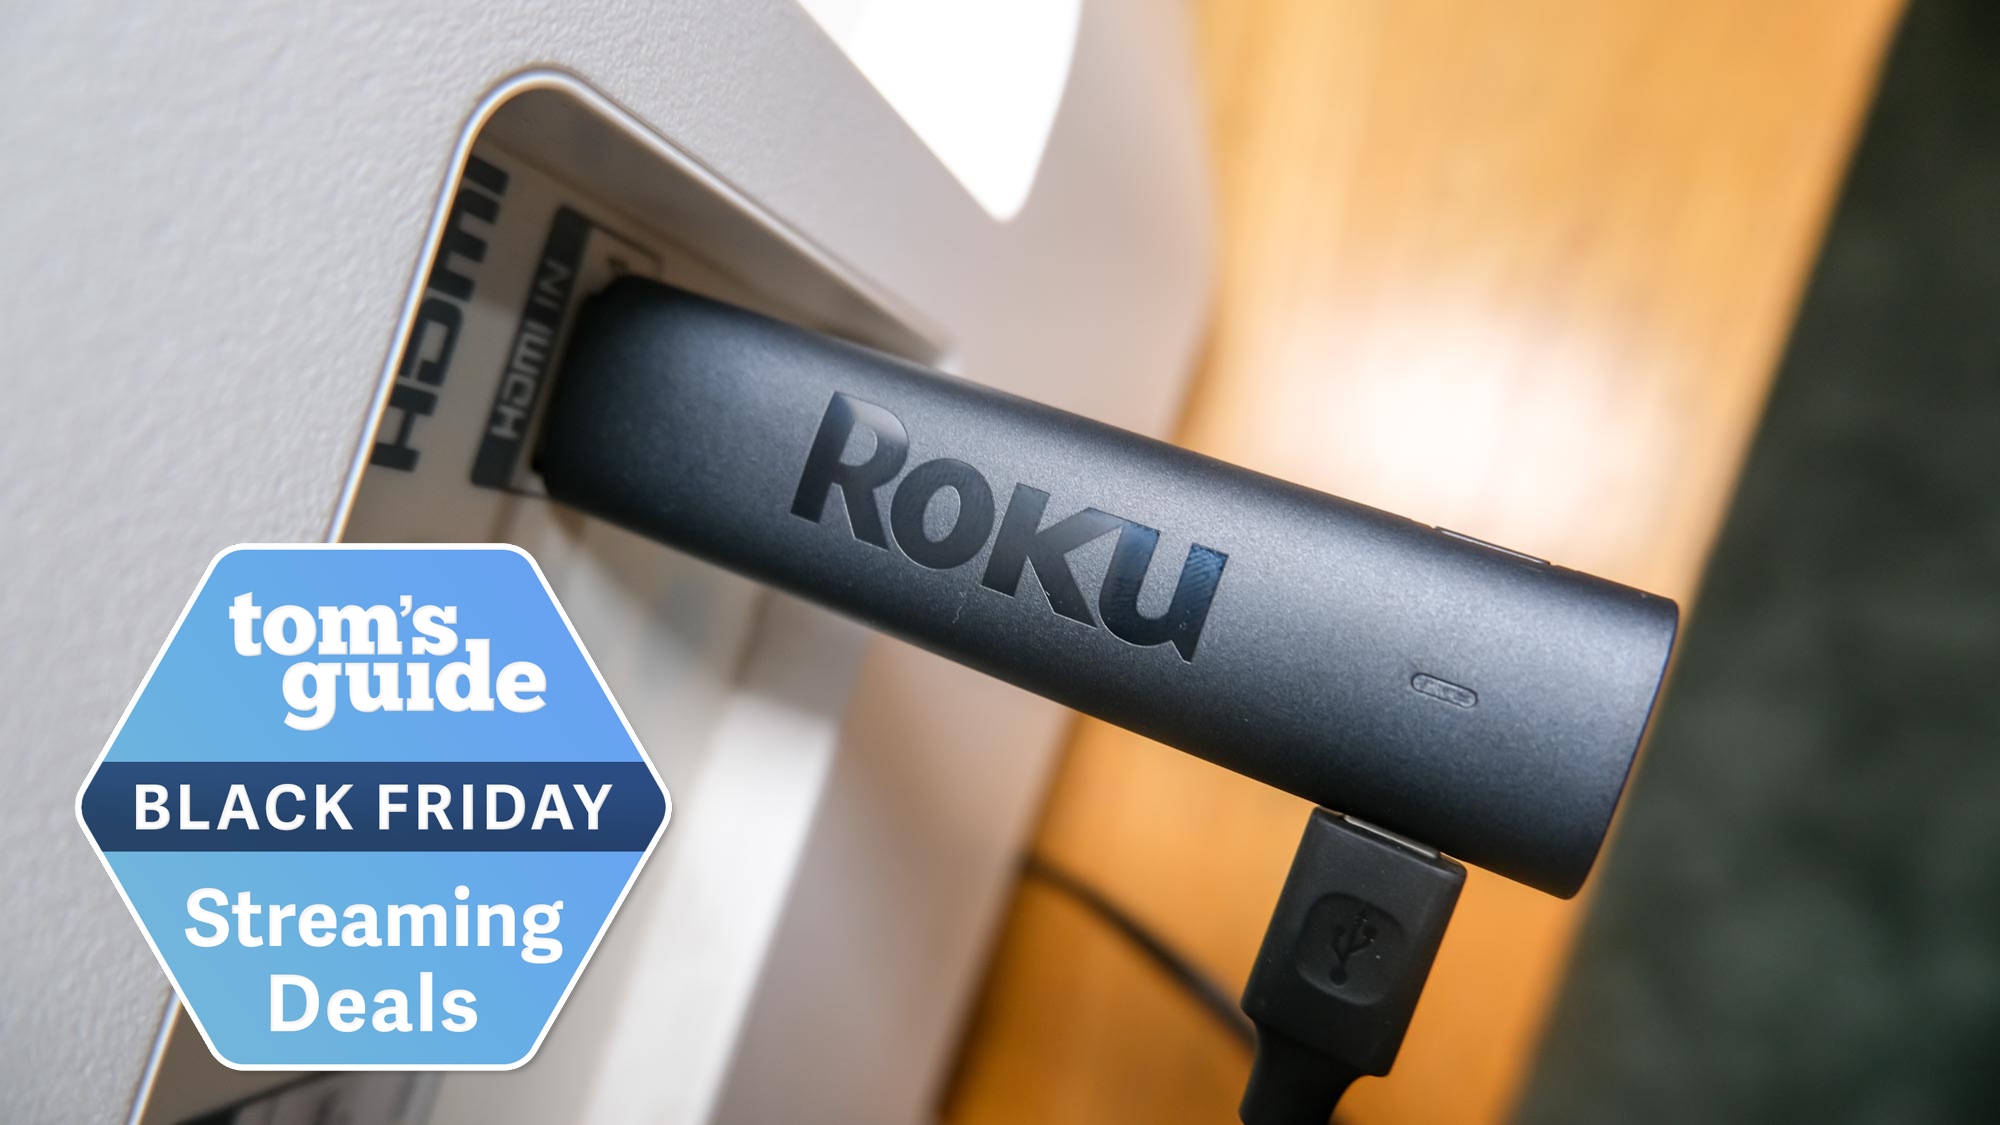 En iyi Roku Black Friday fırsatlarını buldum - 29 $ Roku Stick, 99 $ Roku TV ve daha fazlası - Dünyadan Güncel Teknoloji Haberleri